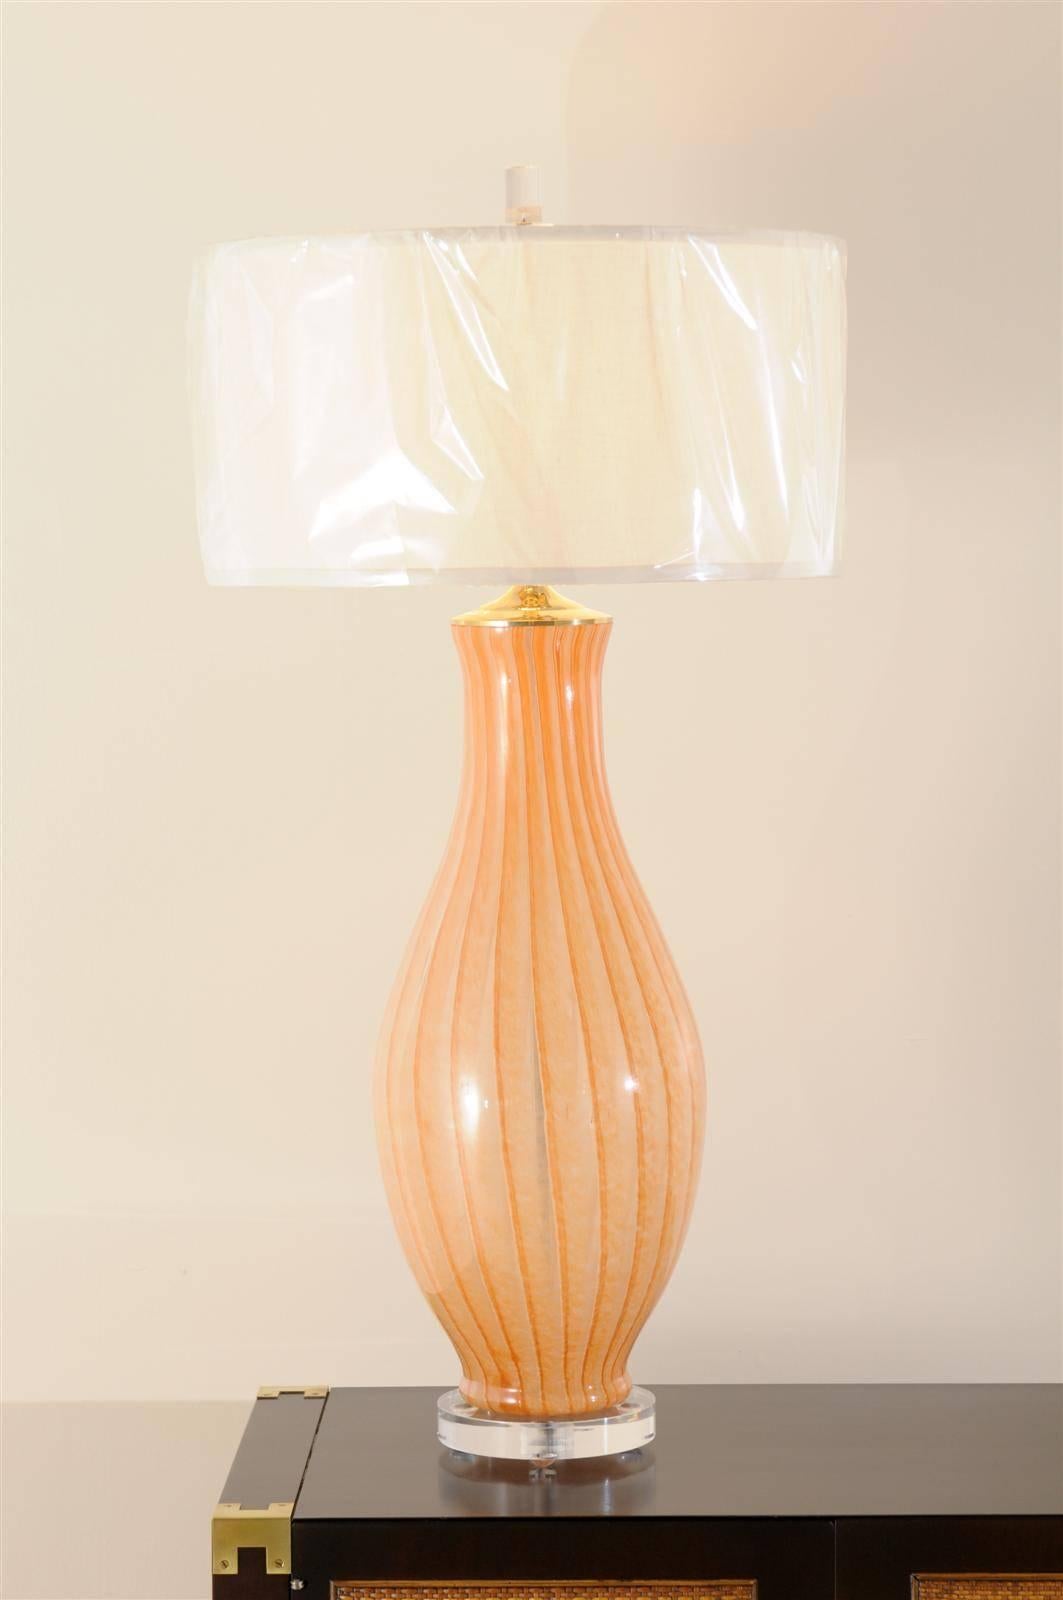 Une belle paire de lampes monumentales soufflées de Murano, vers 1970. Forme et couleur exquises. Des bijoux étonnants ! Restaurés et en parfait état. Les lampes ont été recâblées avec un cordon transparent et sont montées sur un nouveau socle en